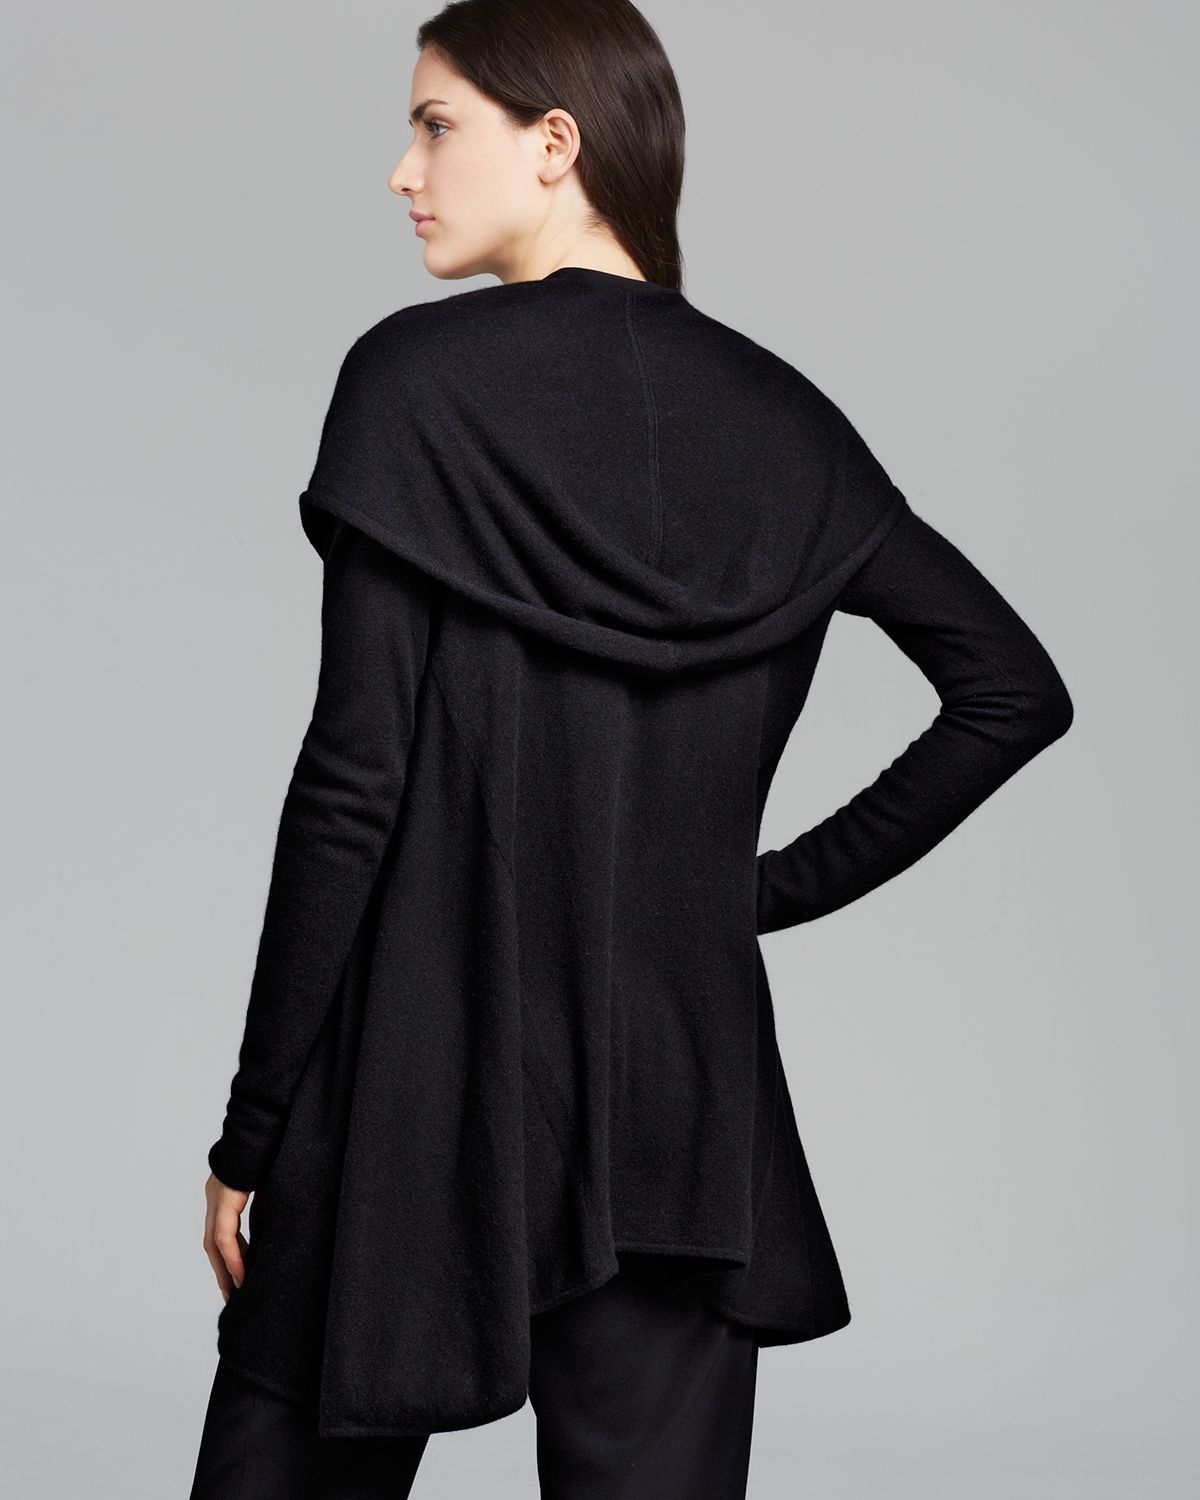 Black hooded cardigans for women black for women